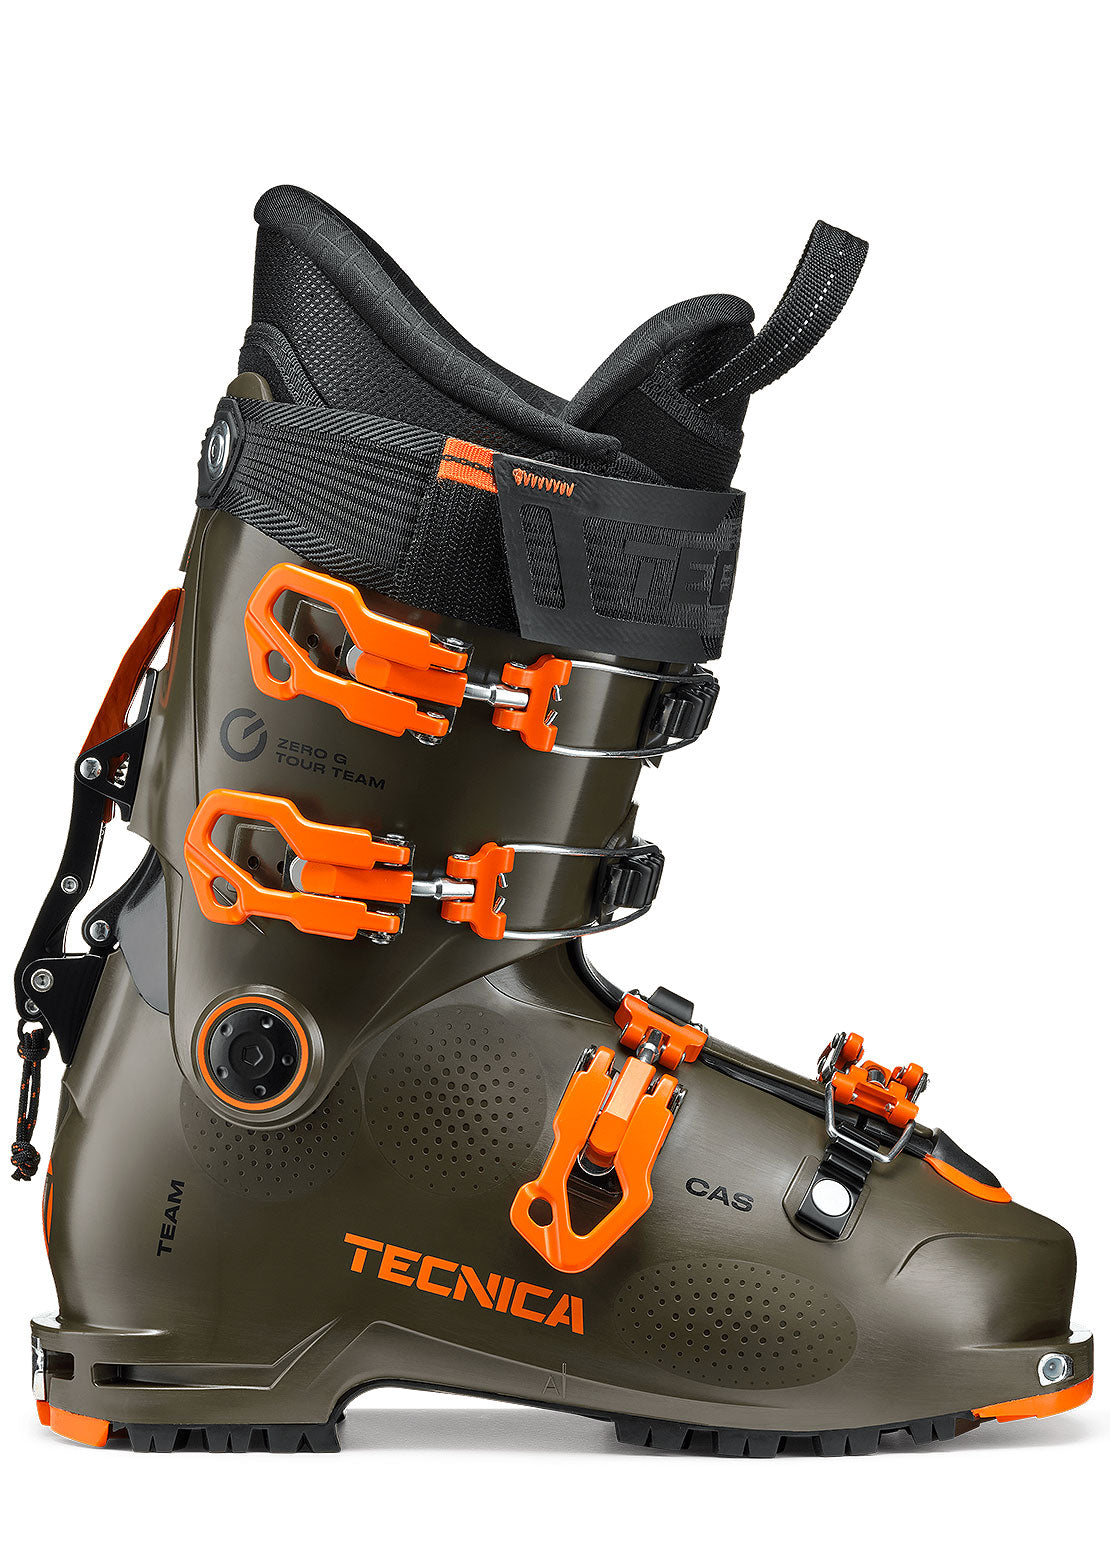 Tecnica Junior Zero G Team Ski Boots Tundra